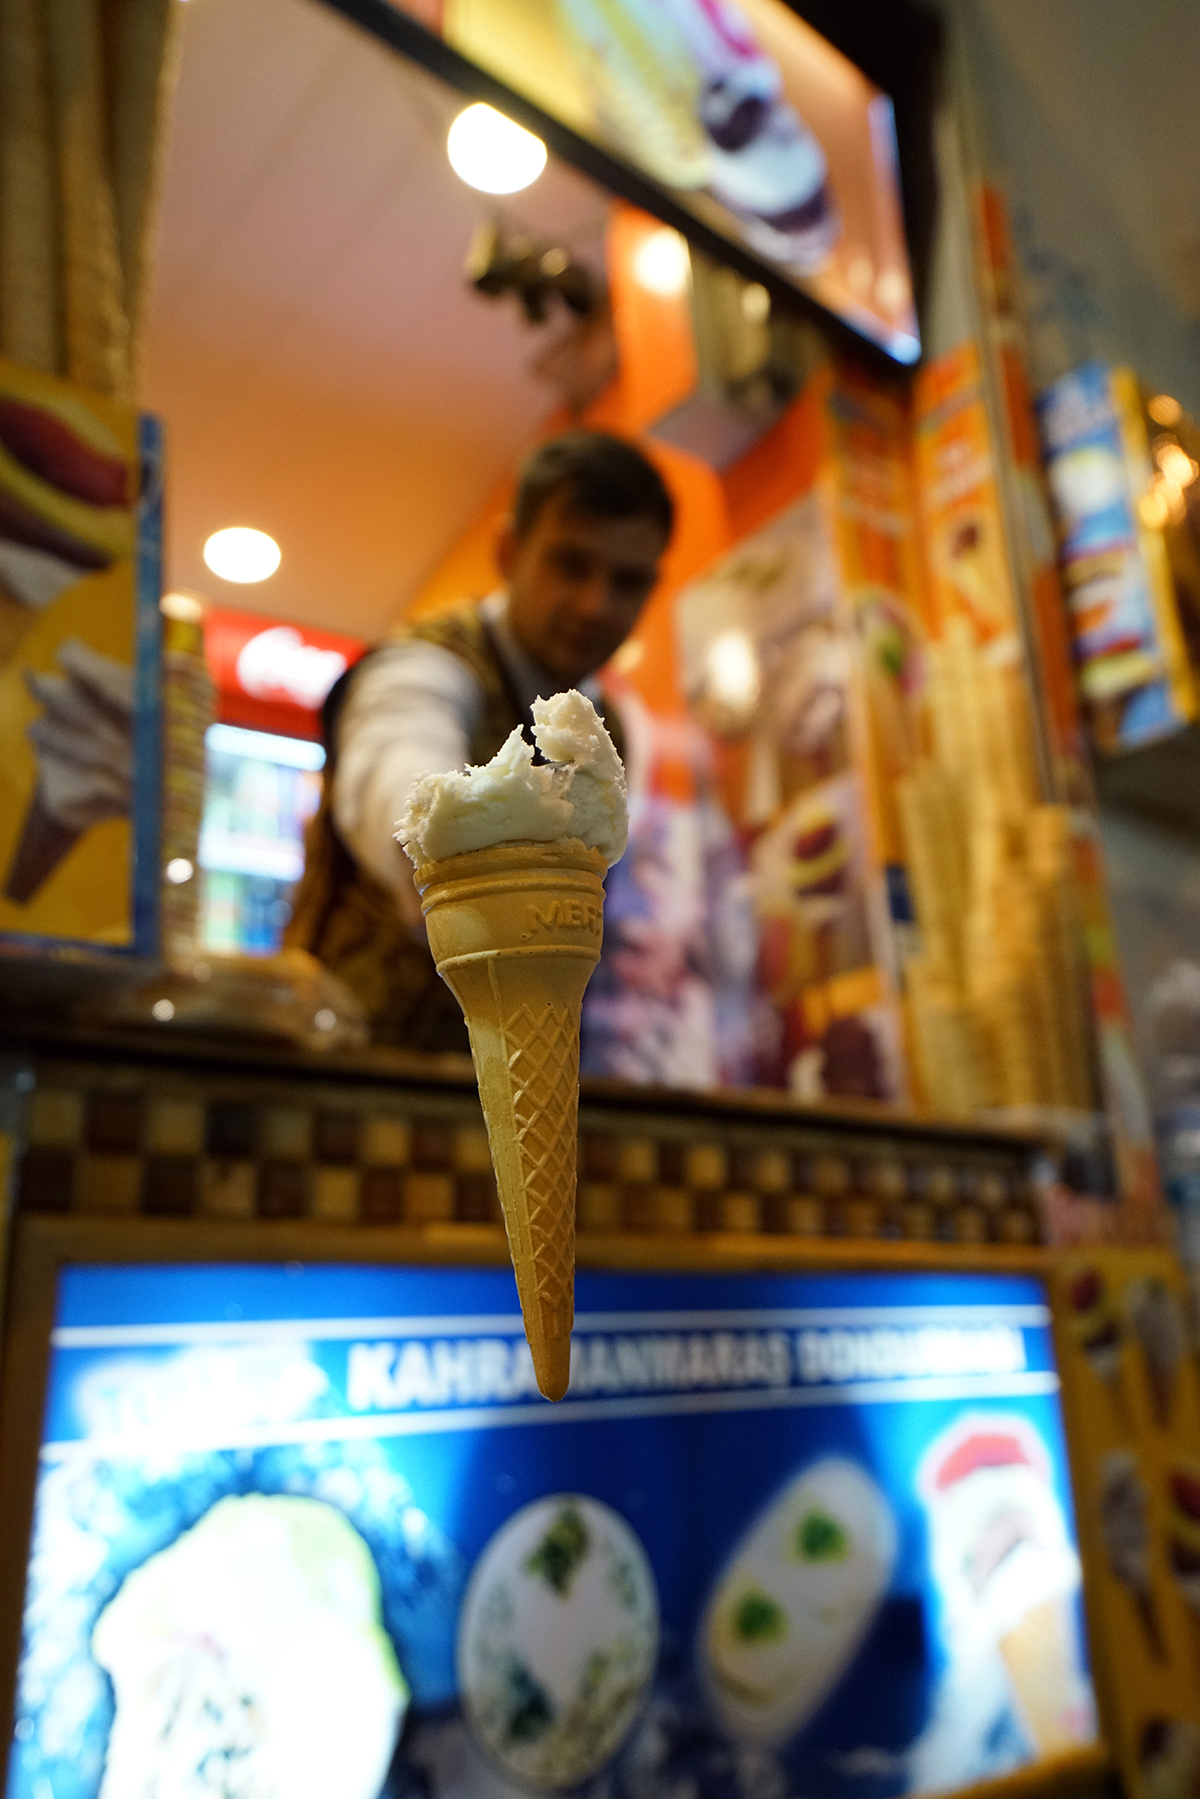 #343 —Beyoğlu –
Maraş-style ice cream vendor.
